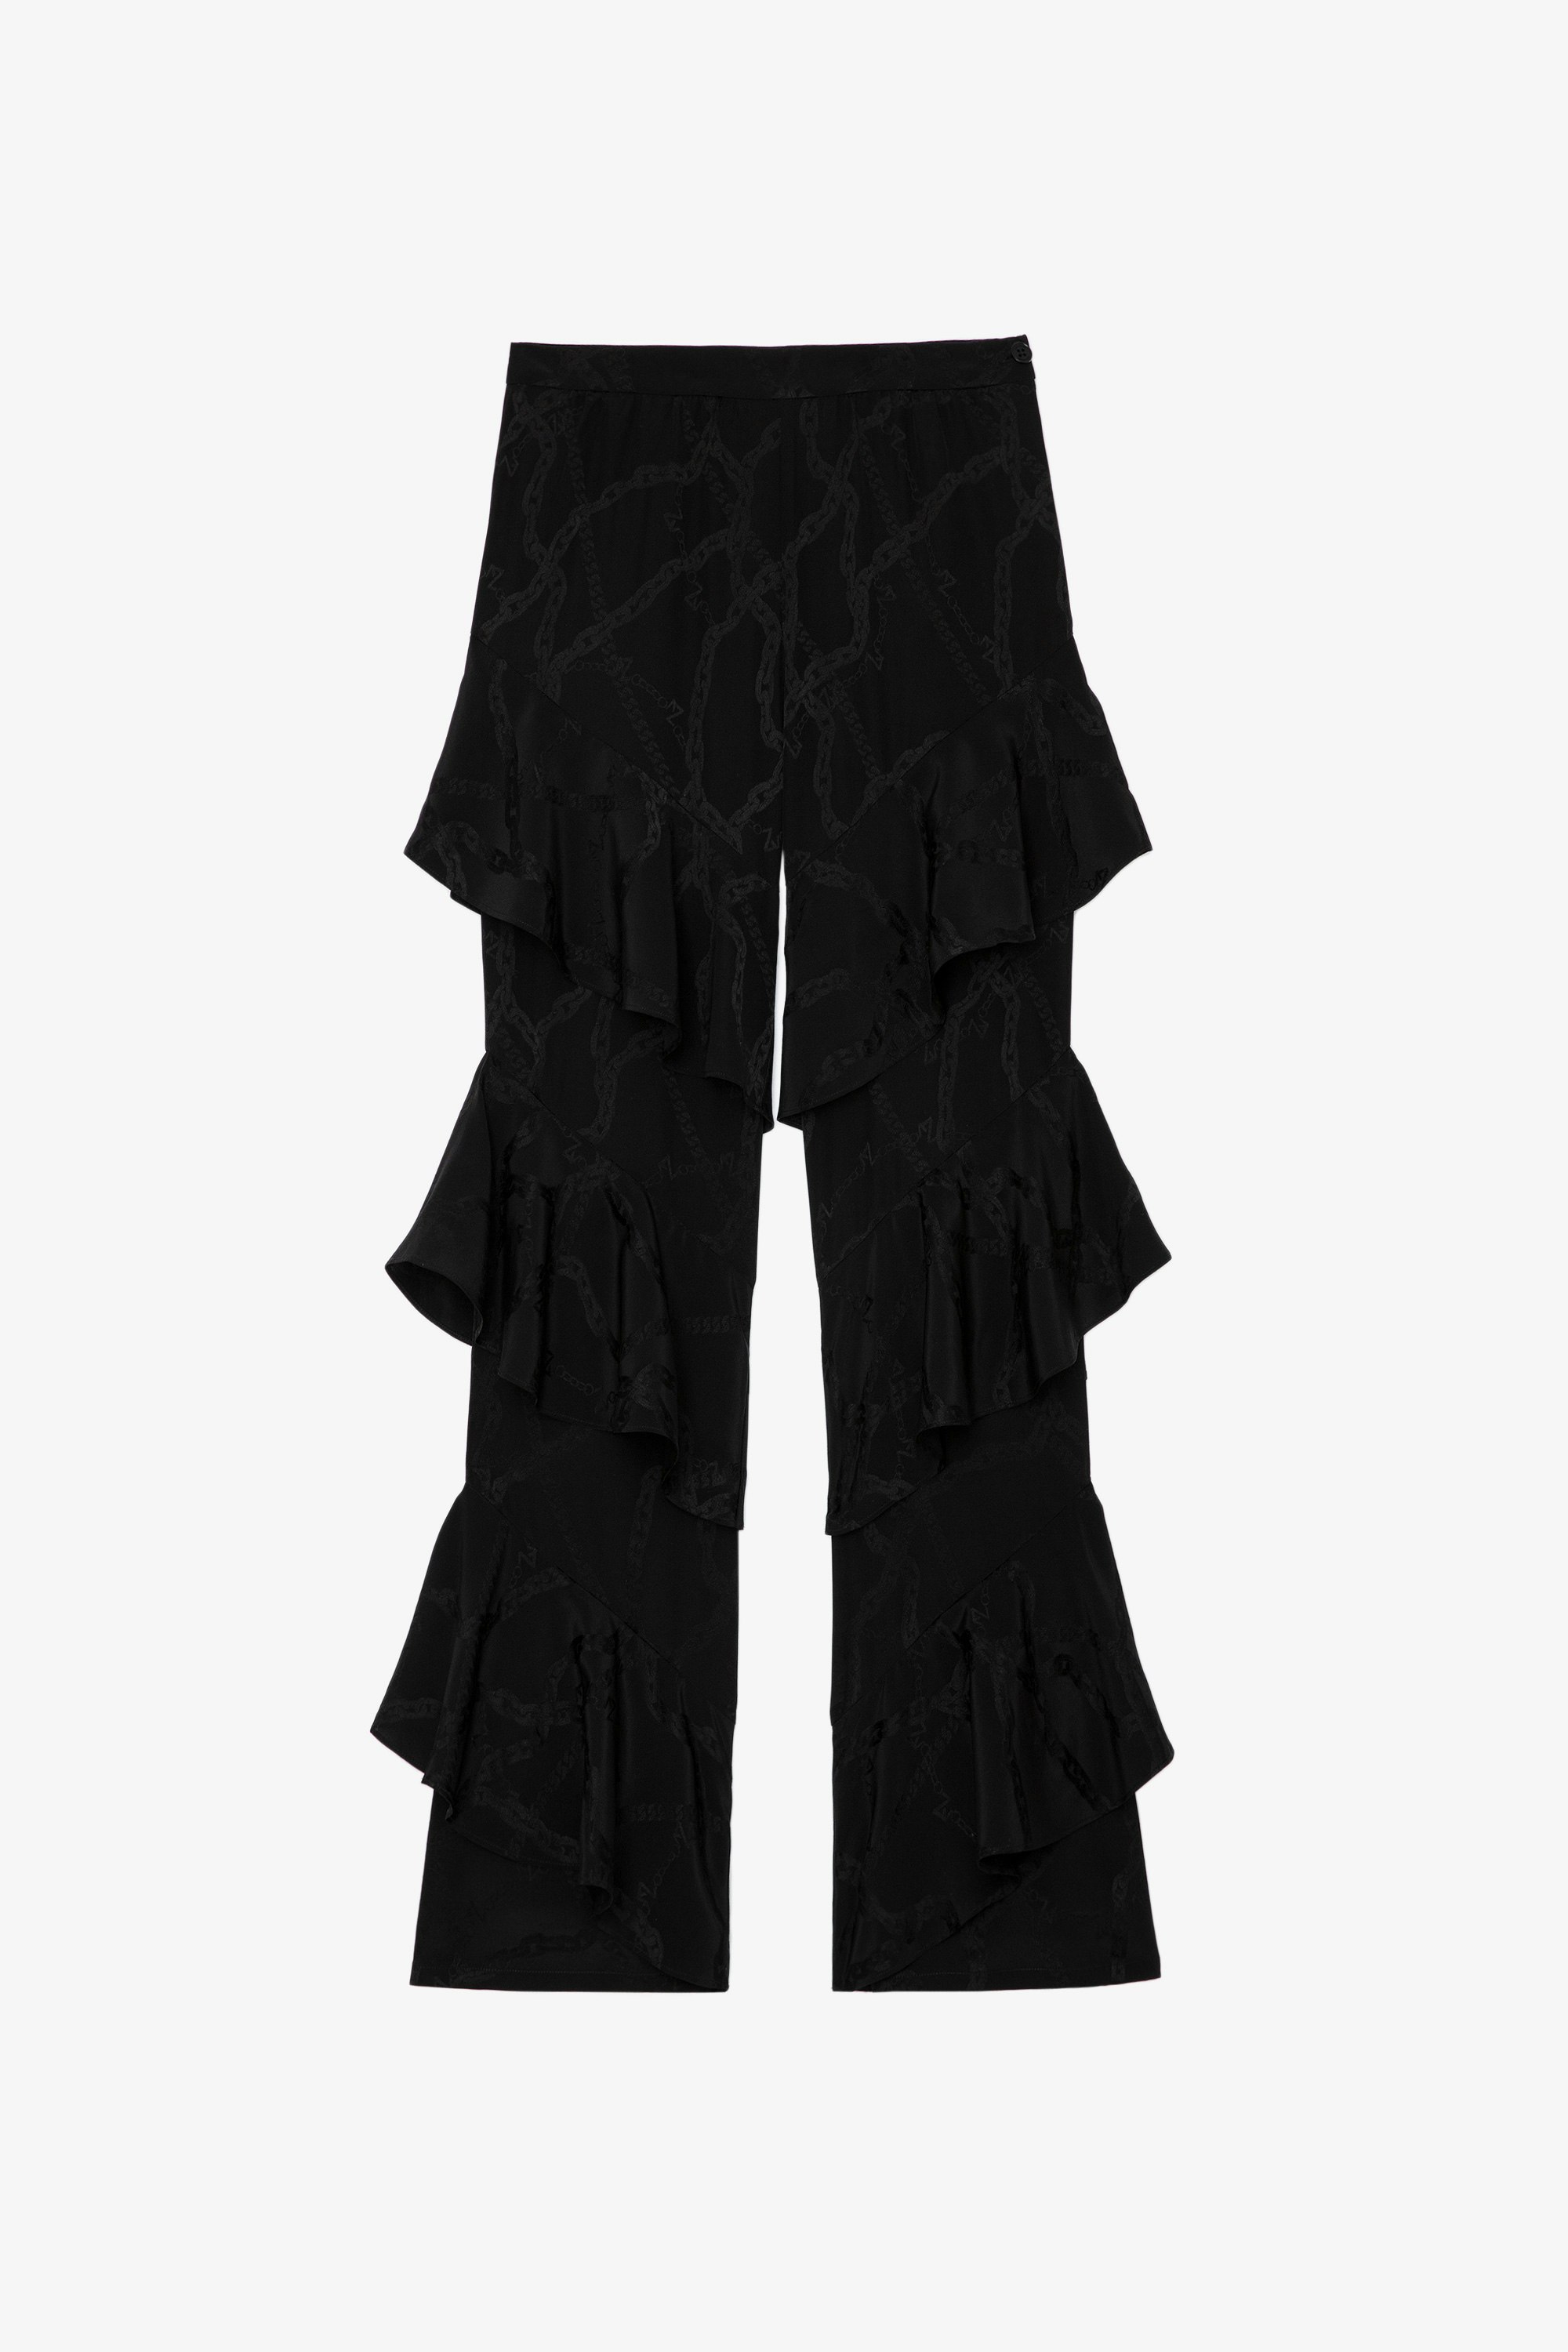 Pantalon Poum Chaines Soie Pantalon en soie noire à volants et orné d'un jacquard chaînes ZV femme 